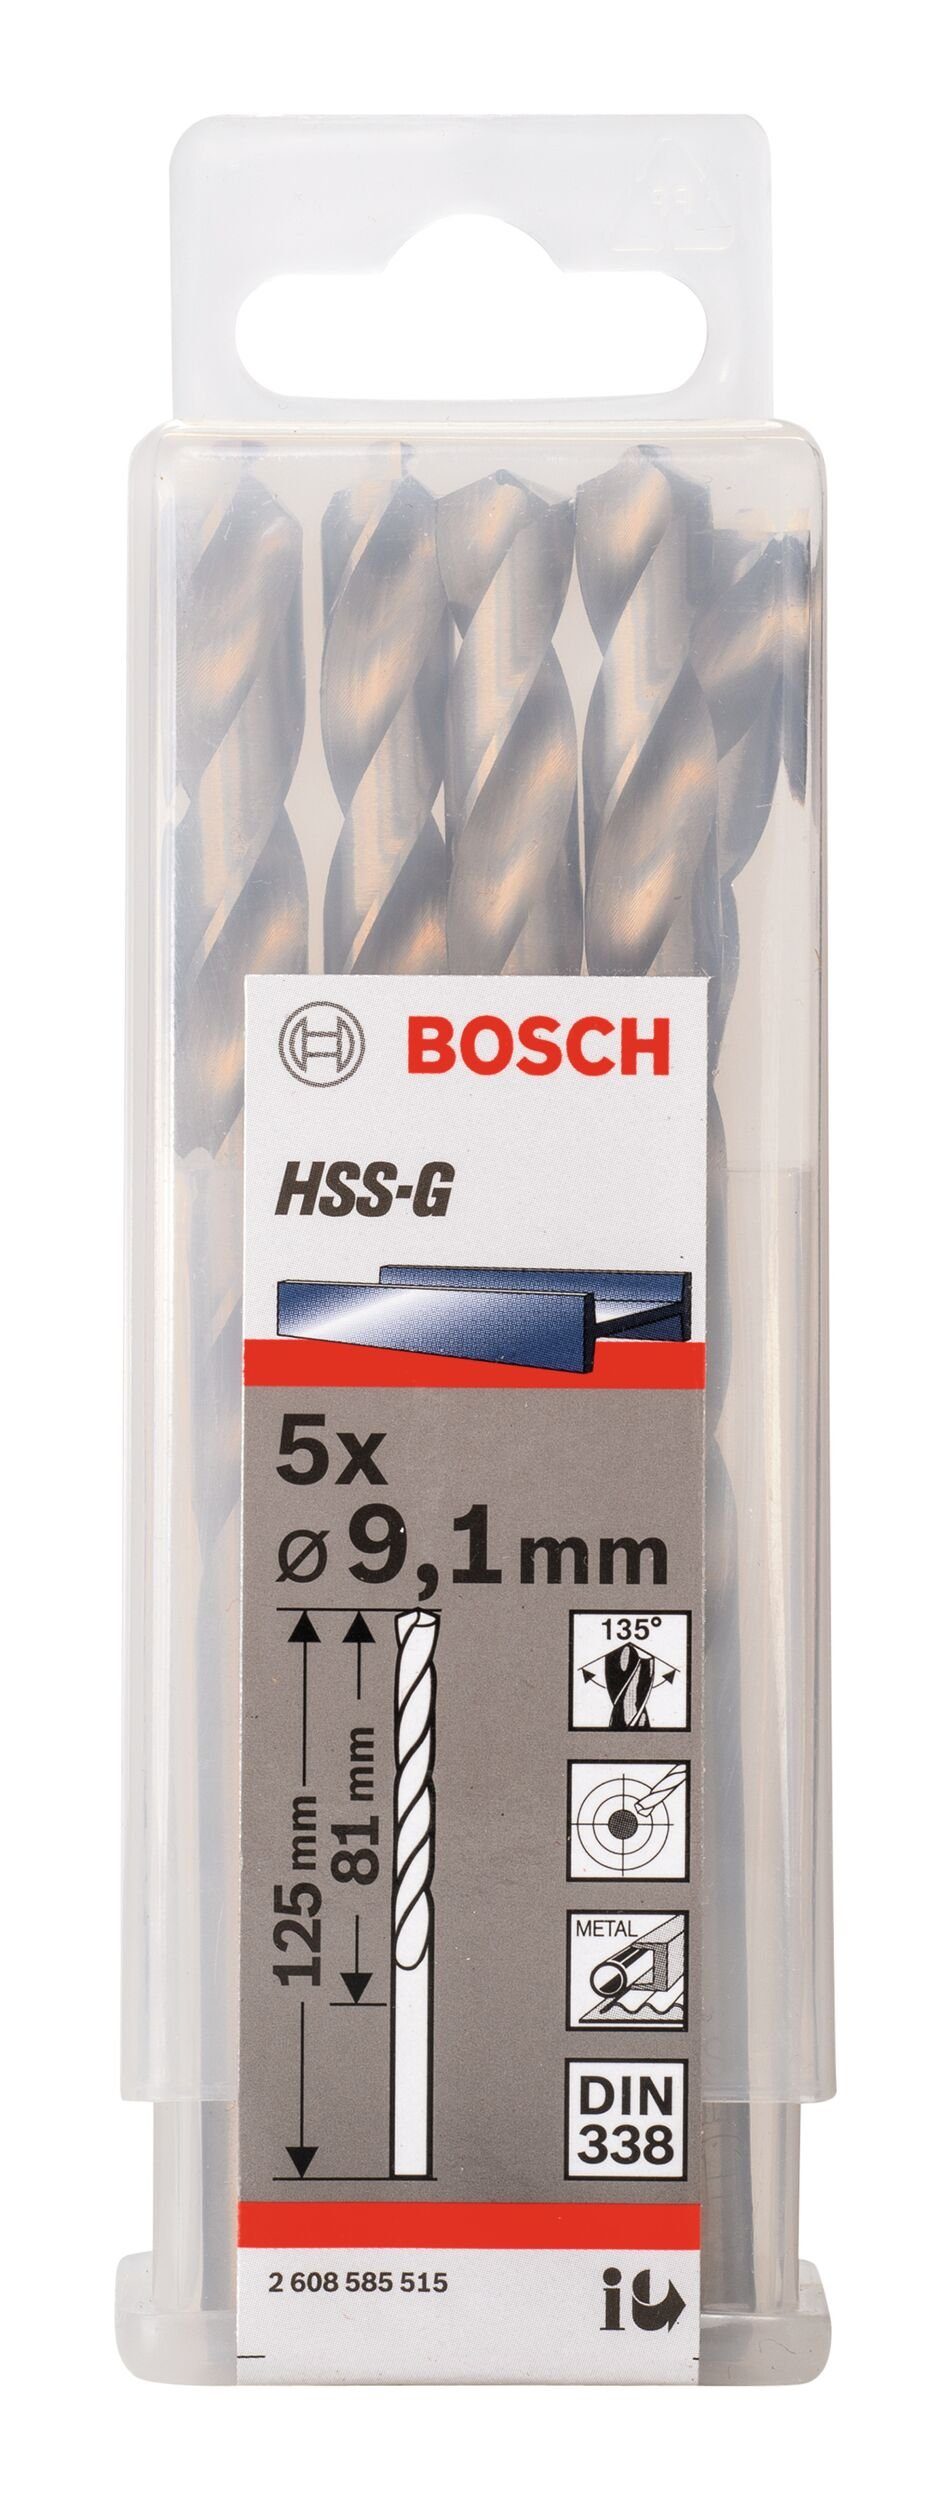 x 125 - 9,1 Stück), x 81 - Metallbohrer, HSS-G 338) (5 (DIN mm BOSCH 5er-Pack